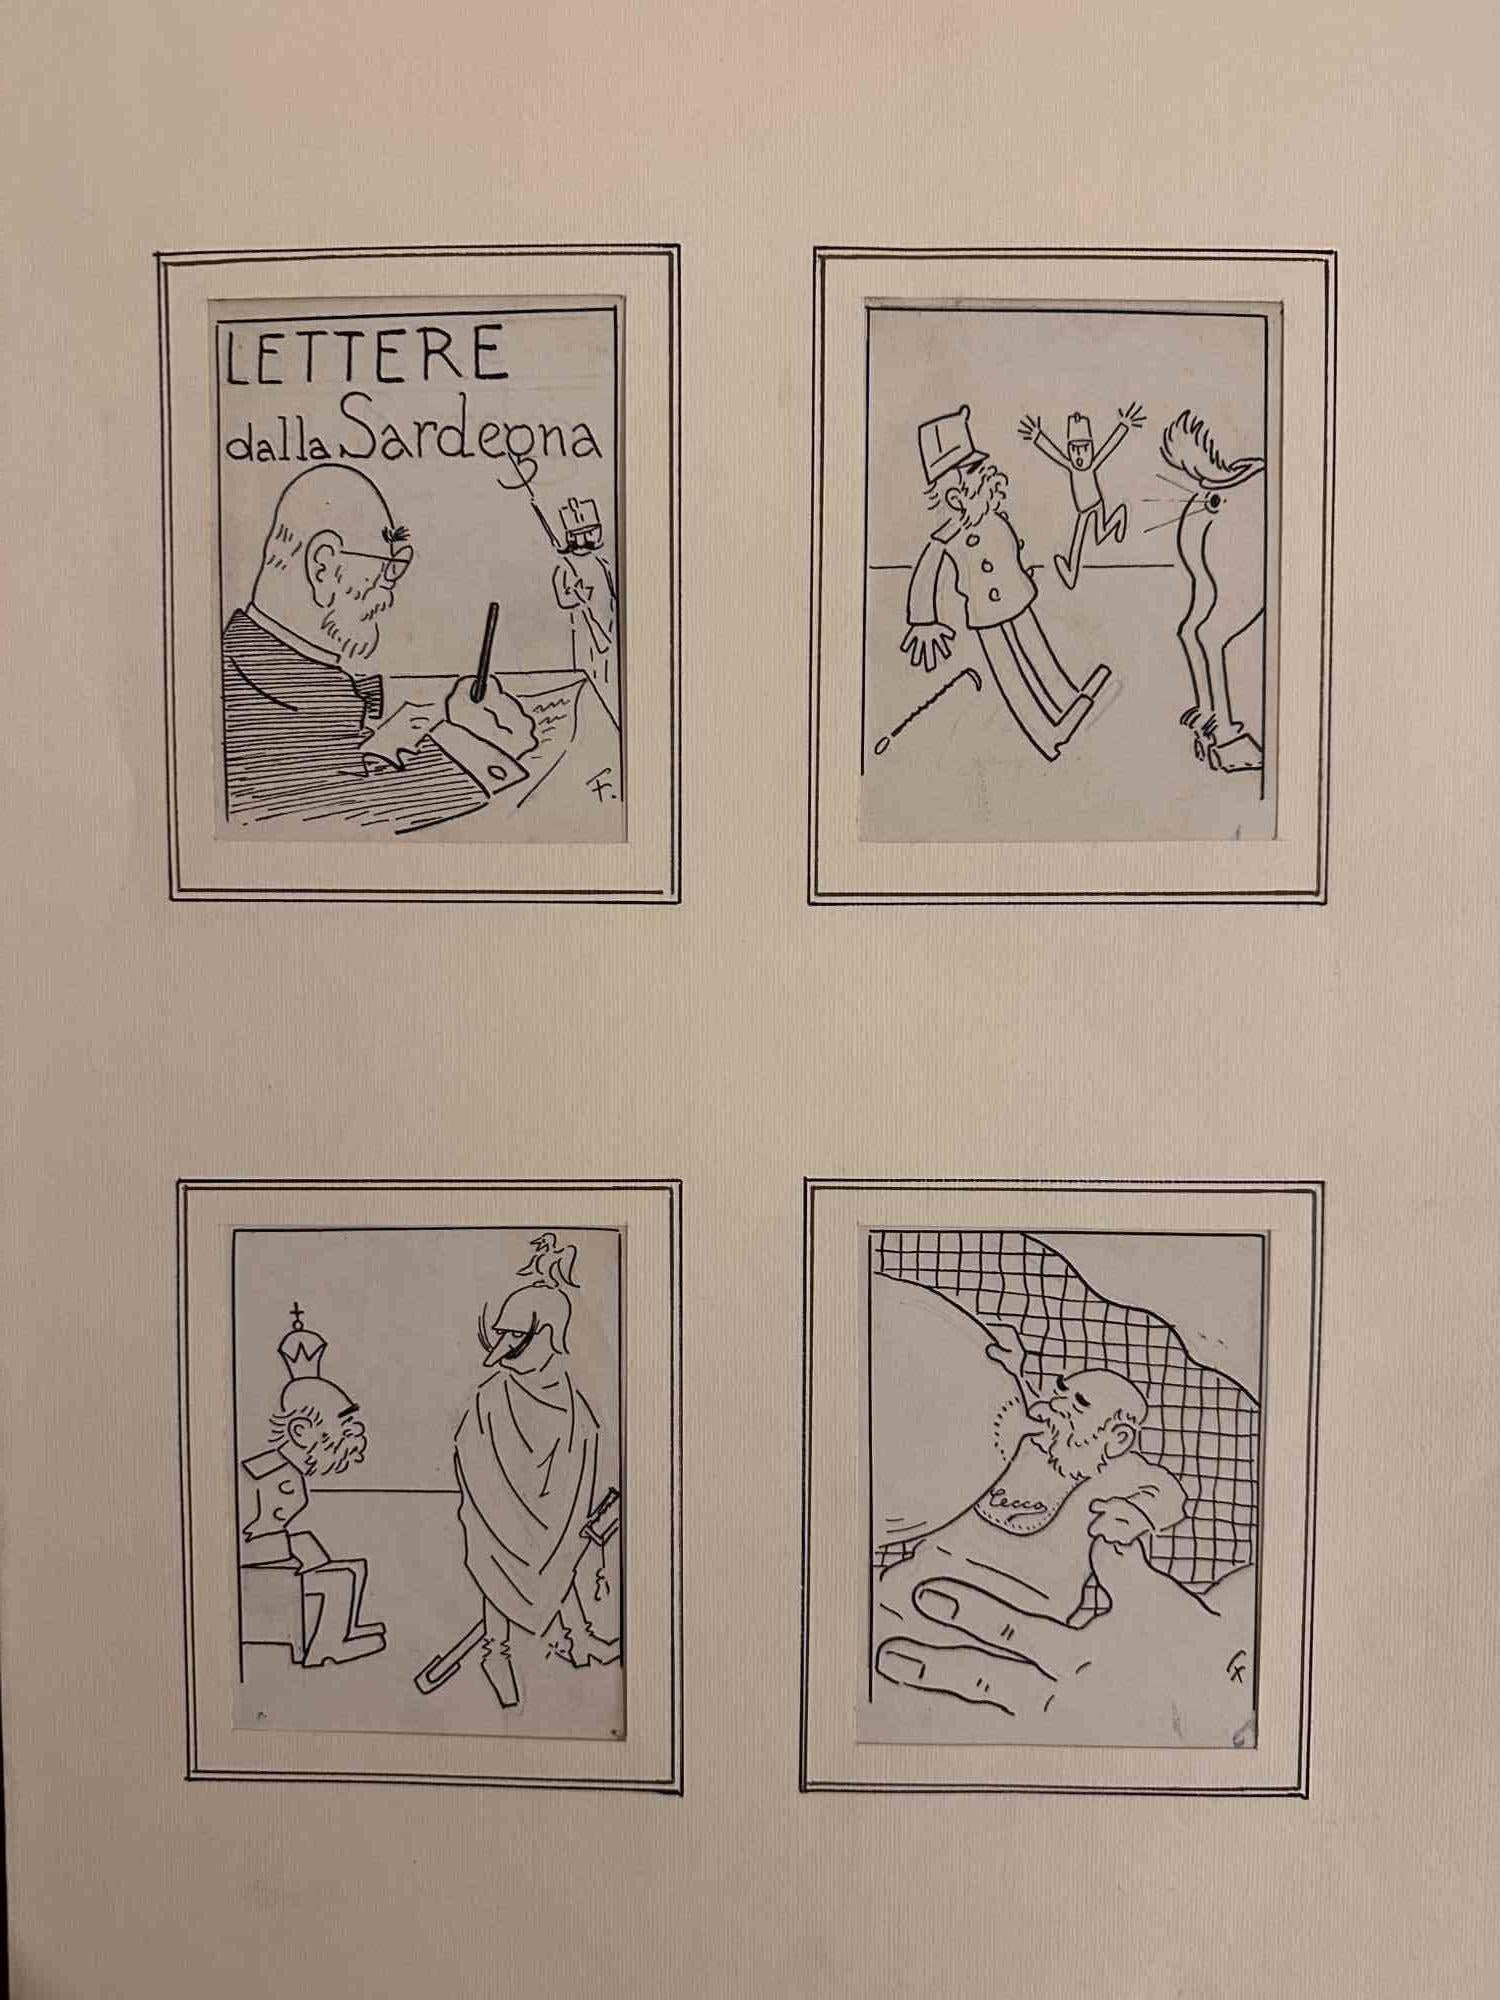 Letters to Sardinia ist ein modernes Kunstwerk des italienischen Künstlers Filiberto Scarpelli (Neapel, 1870 - Rom, 1933), das vier separate Kunstwerke in einem Rahmen vereint.  Originalzeichnungen mit Feder auf Papier. 

Passepartout ist enthalten